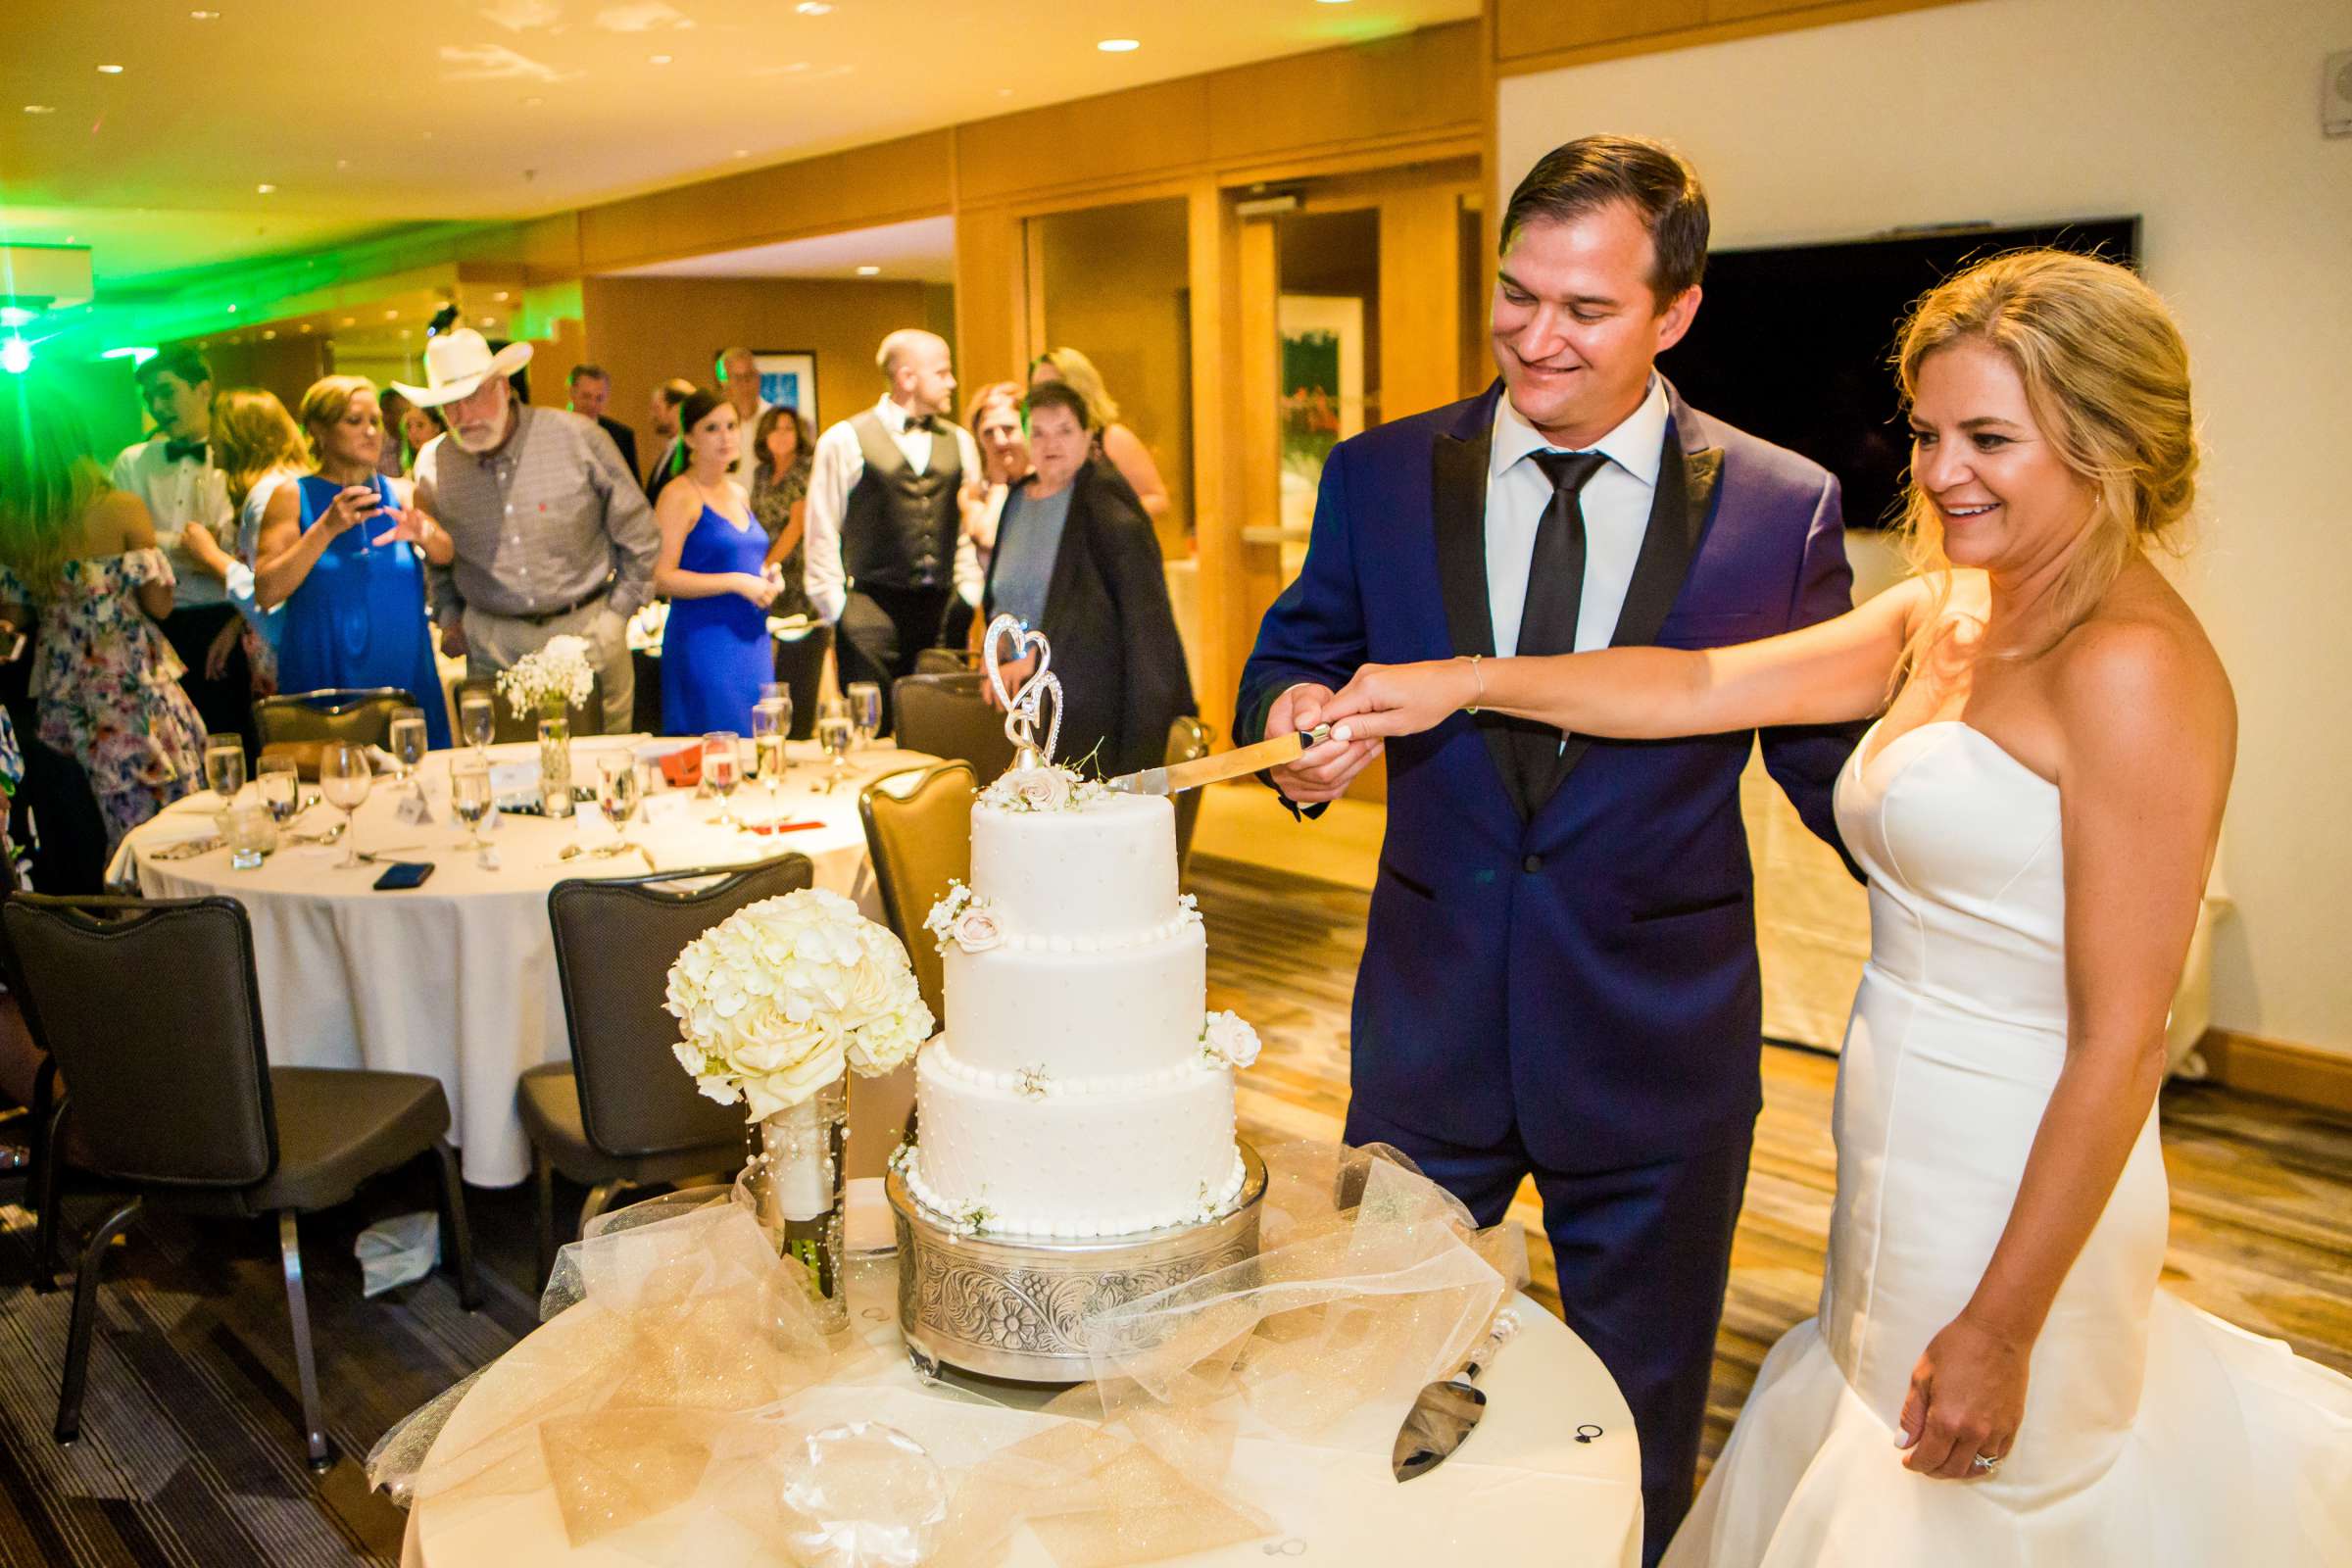 Hilton San Diego Bayfront Wedding, Debi and Dan Wedding Photo #484053 by True Photography